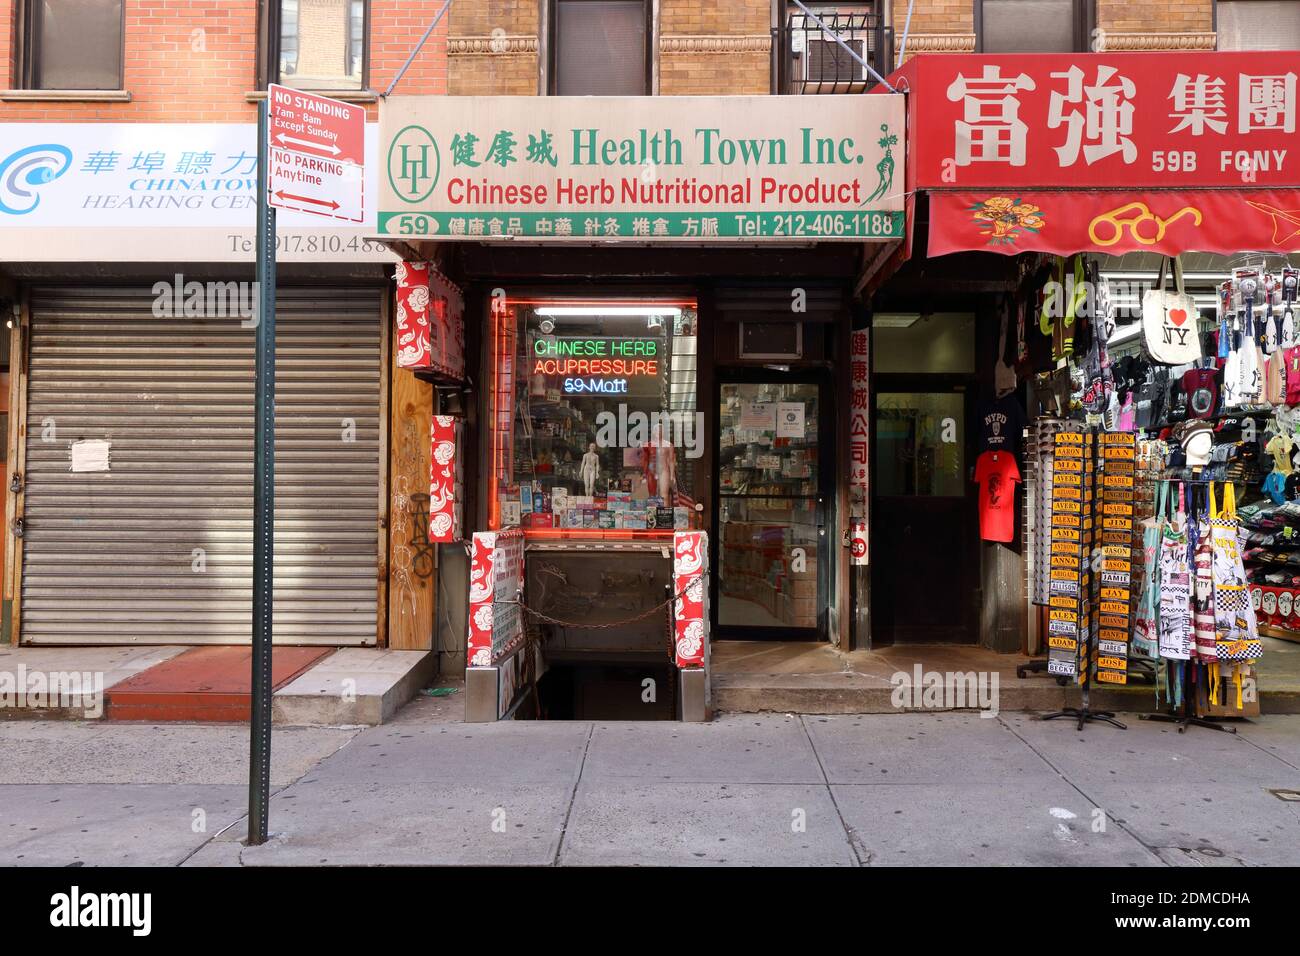 Health Town Inc 健康城, 59 Mott St, New York, NY. Escaparate exterior de una tienda de medicina herbaria China en Manhattan Chinatown. Foto de stock